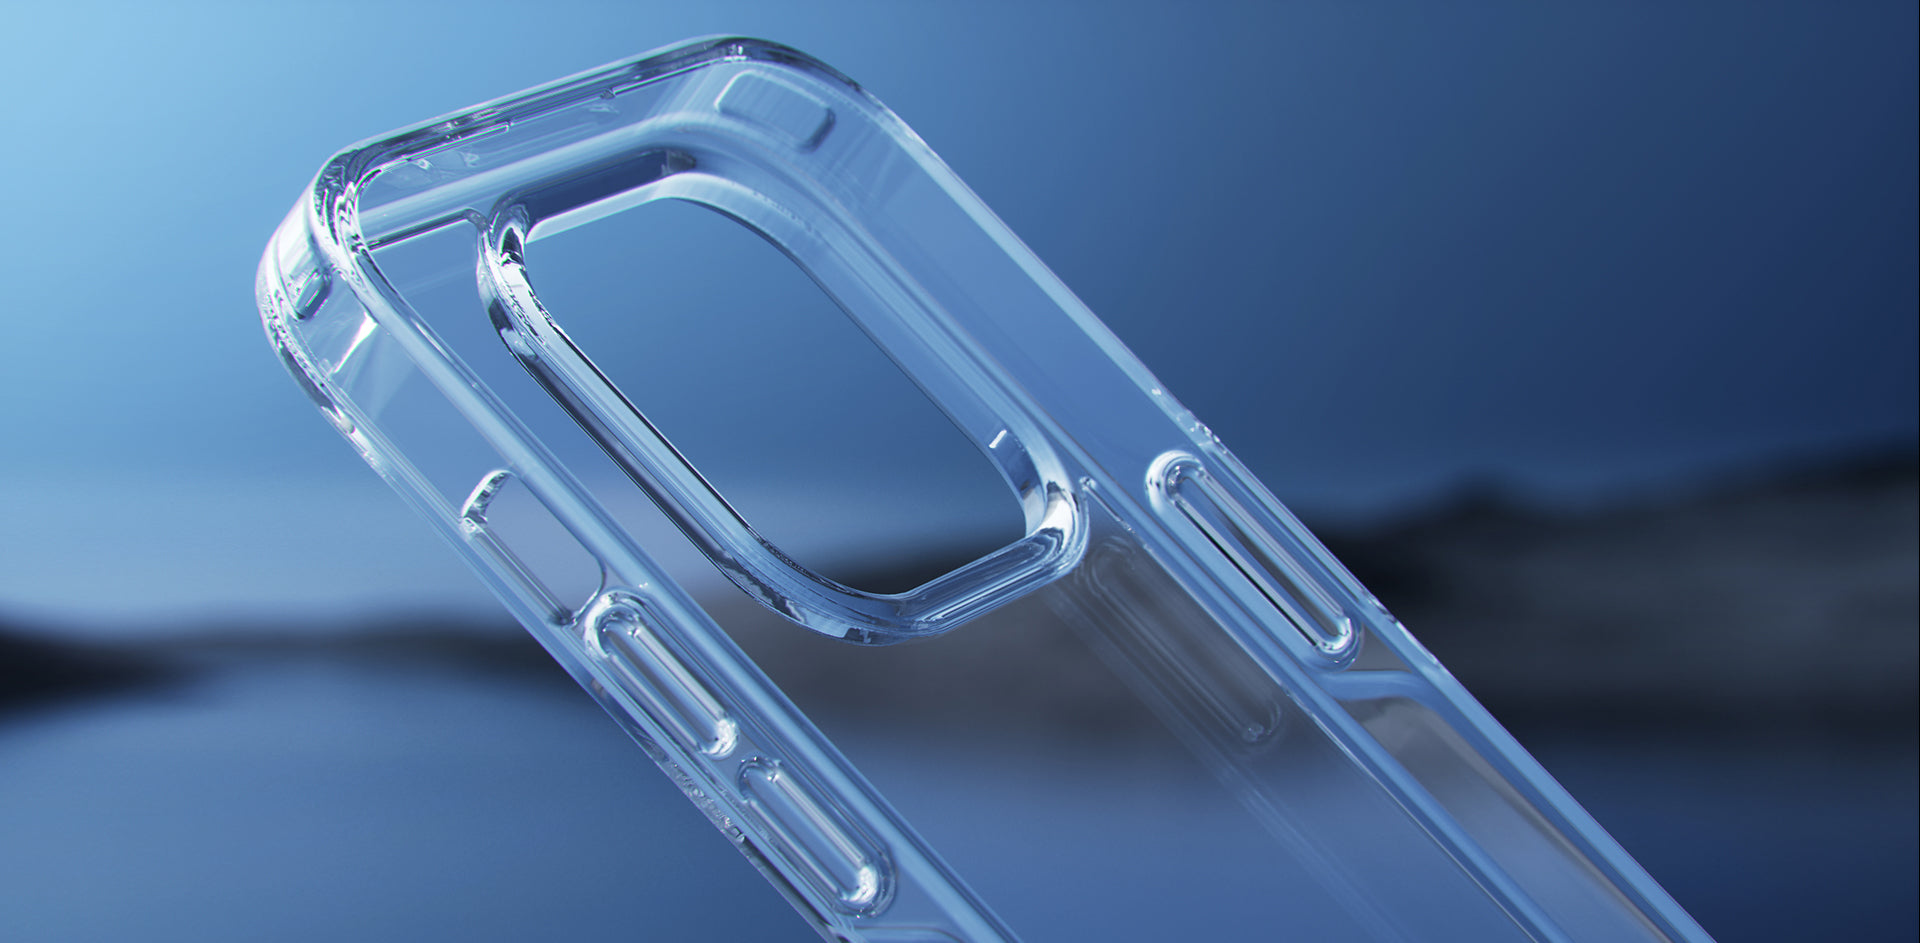  CASEKOO - Funda transparente ultra híbrida, cubierta  transparente con parte trasera dura suave para iPhone 11 Pro Max de 6.5  pulgadas, con tecnología TPU parachoques. : Celulares y Accesorios